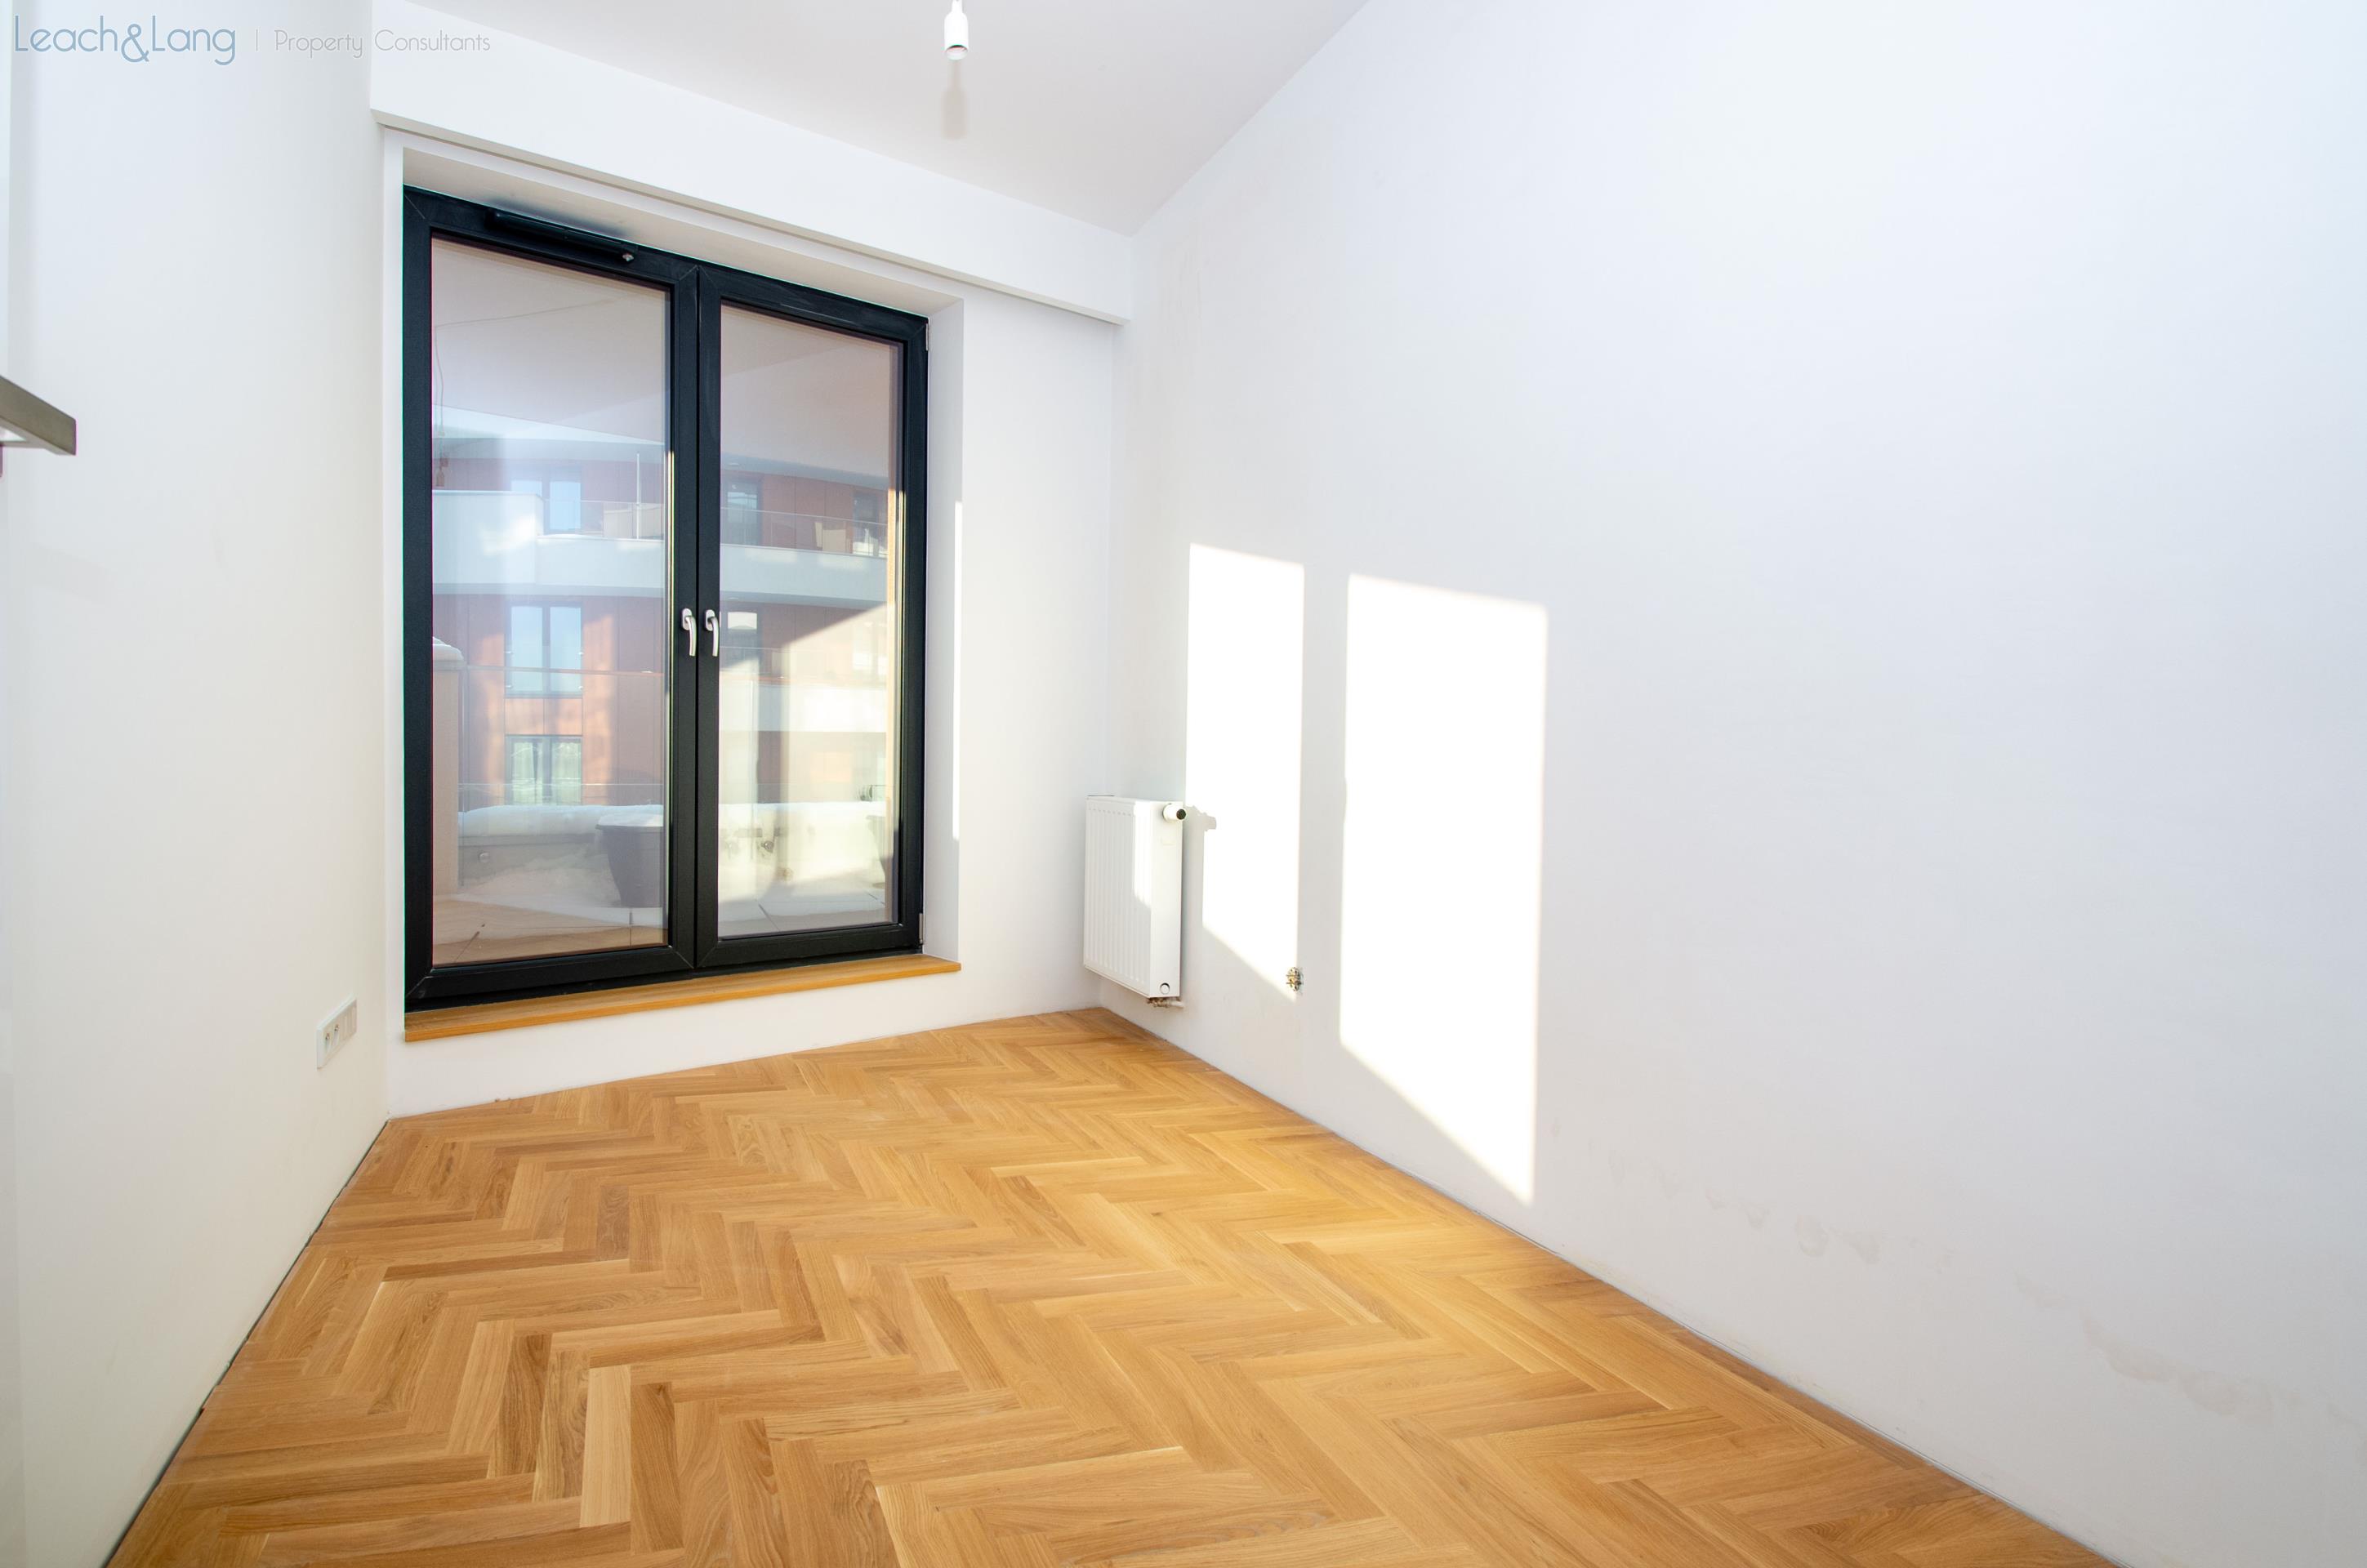 2-bedroom apartment – Wiślane Tarasy 2.0